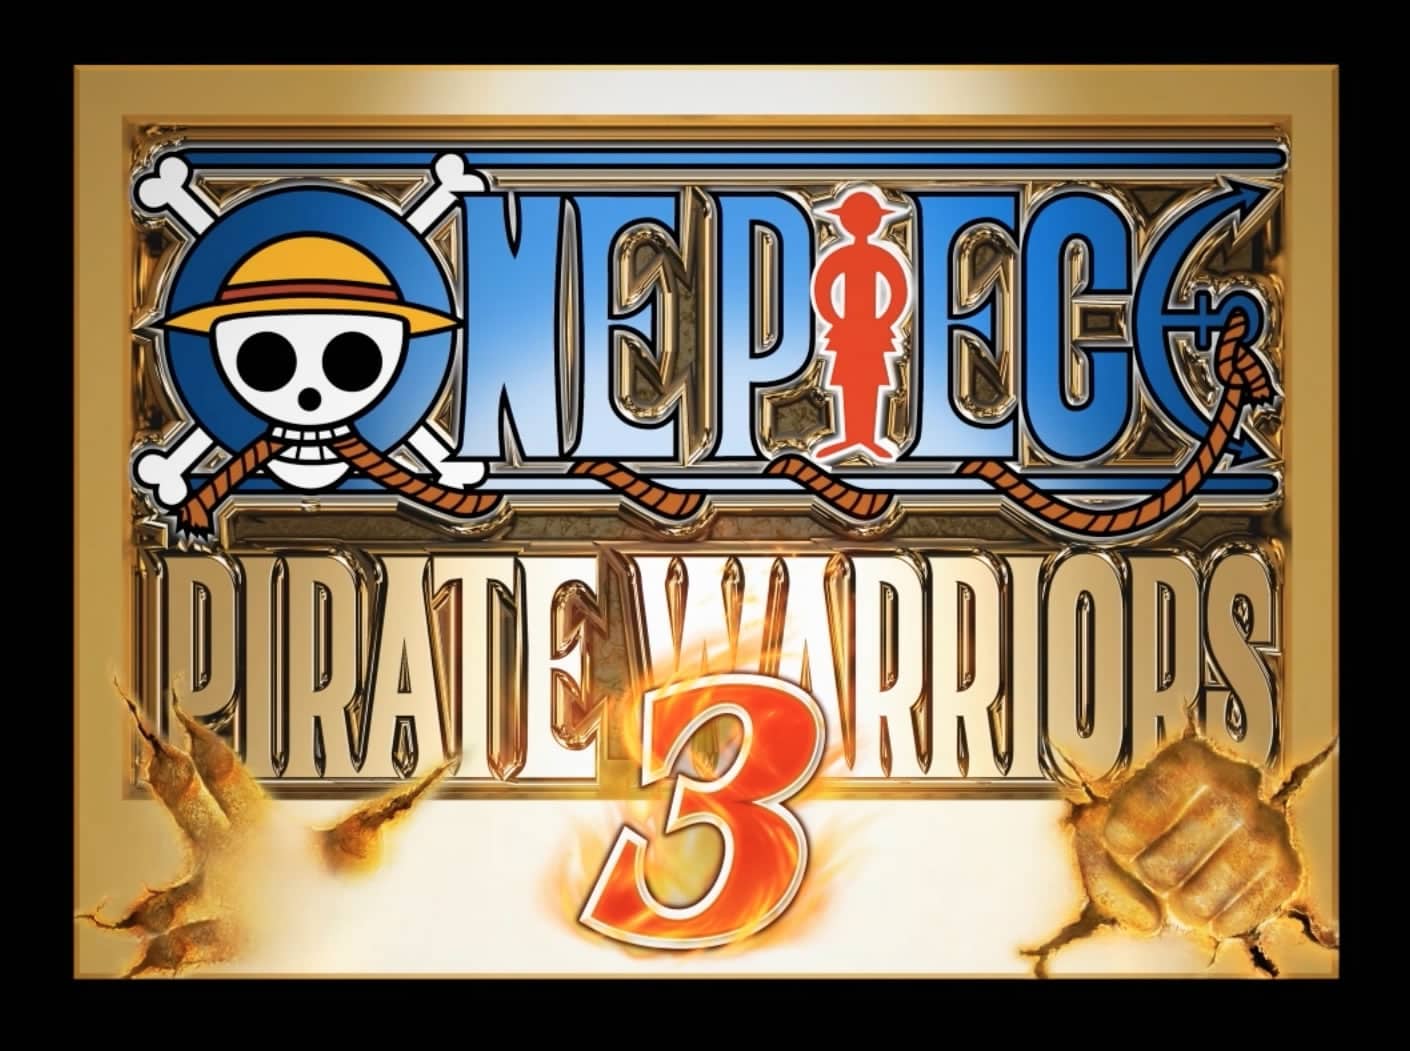 Pirate Warriors 3